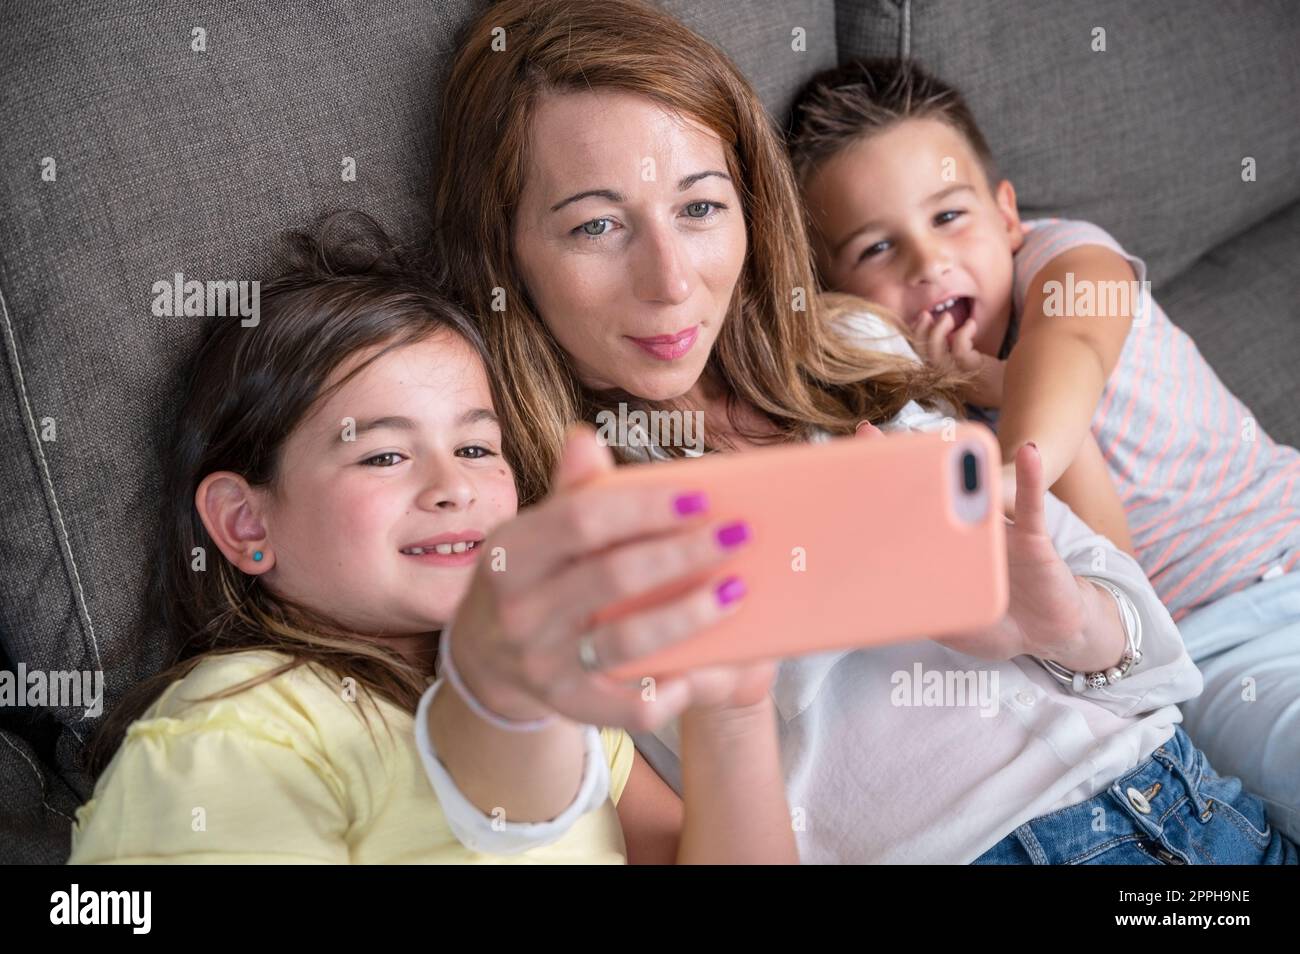 Glückliche Mutter mit ihren Kindern macht ein Selfie oder Videogespräch mit dem Vater oder Verwandten auf dem Sofa. Konzept von Technologie, neue Generation, Familie, Verbindung, Elternschaft. Stockfoto